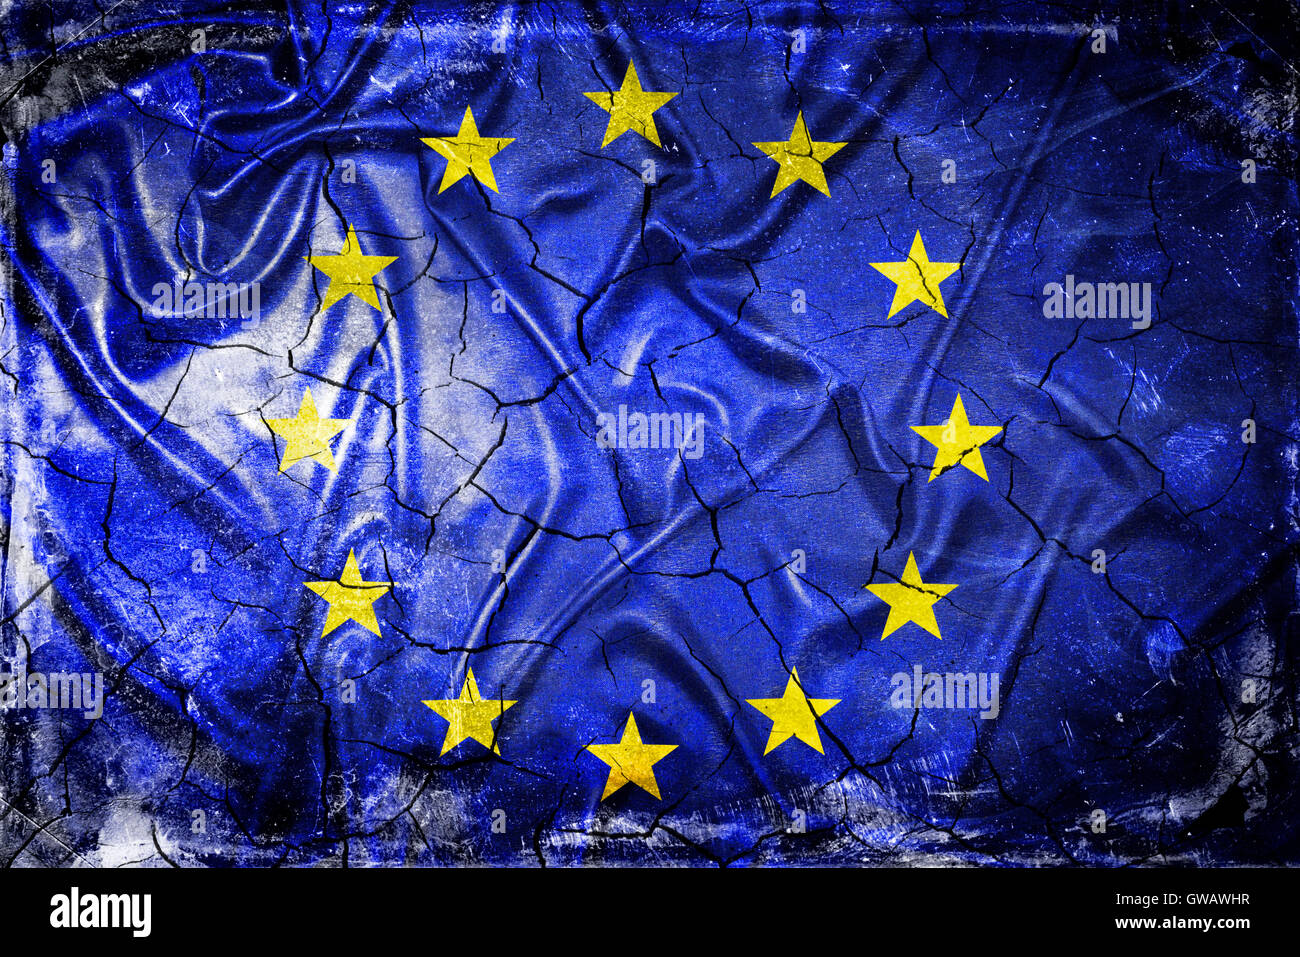 Bandera europea con lágrimas, fotografía simbólica de Europa después de la votación, mit Europa-Fahne Brexit Rissen, Symbolfoto Europa nach dem Brexi Foto de stock